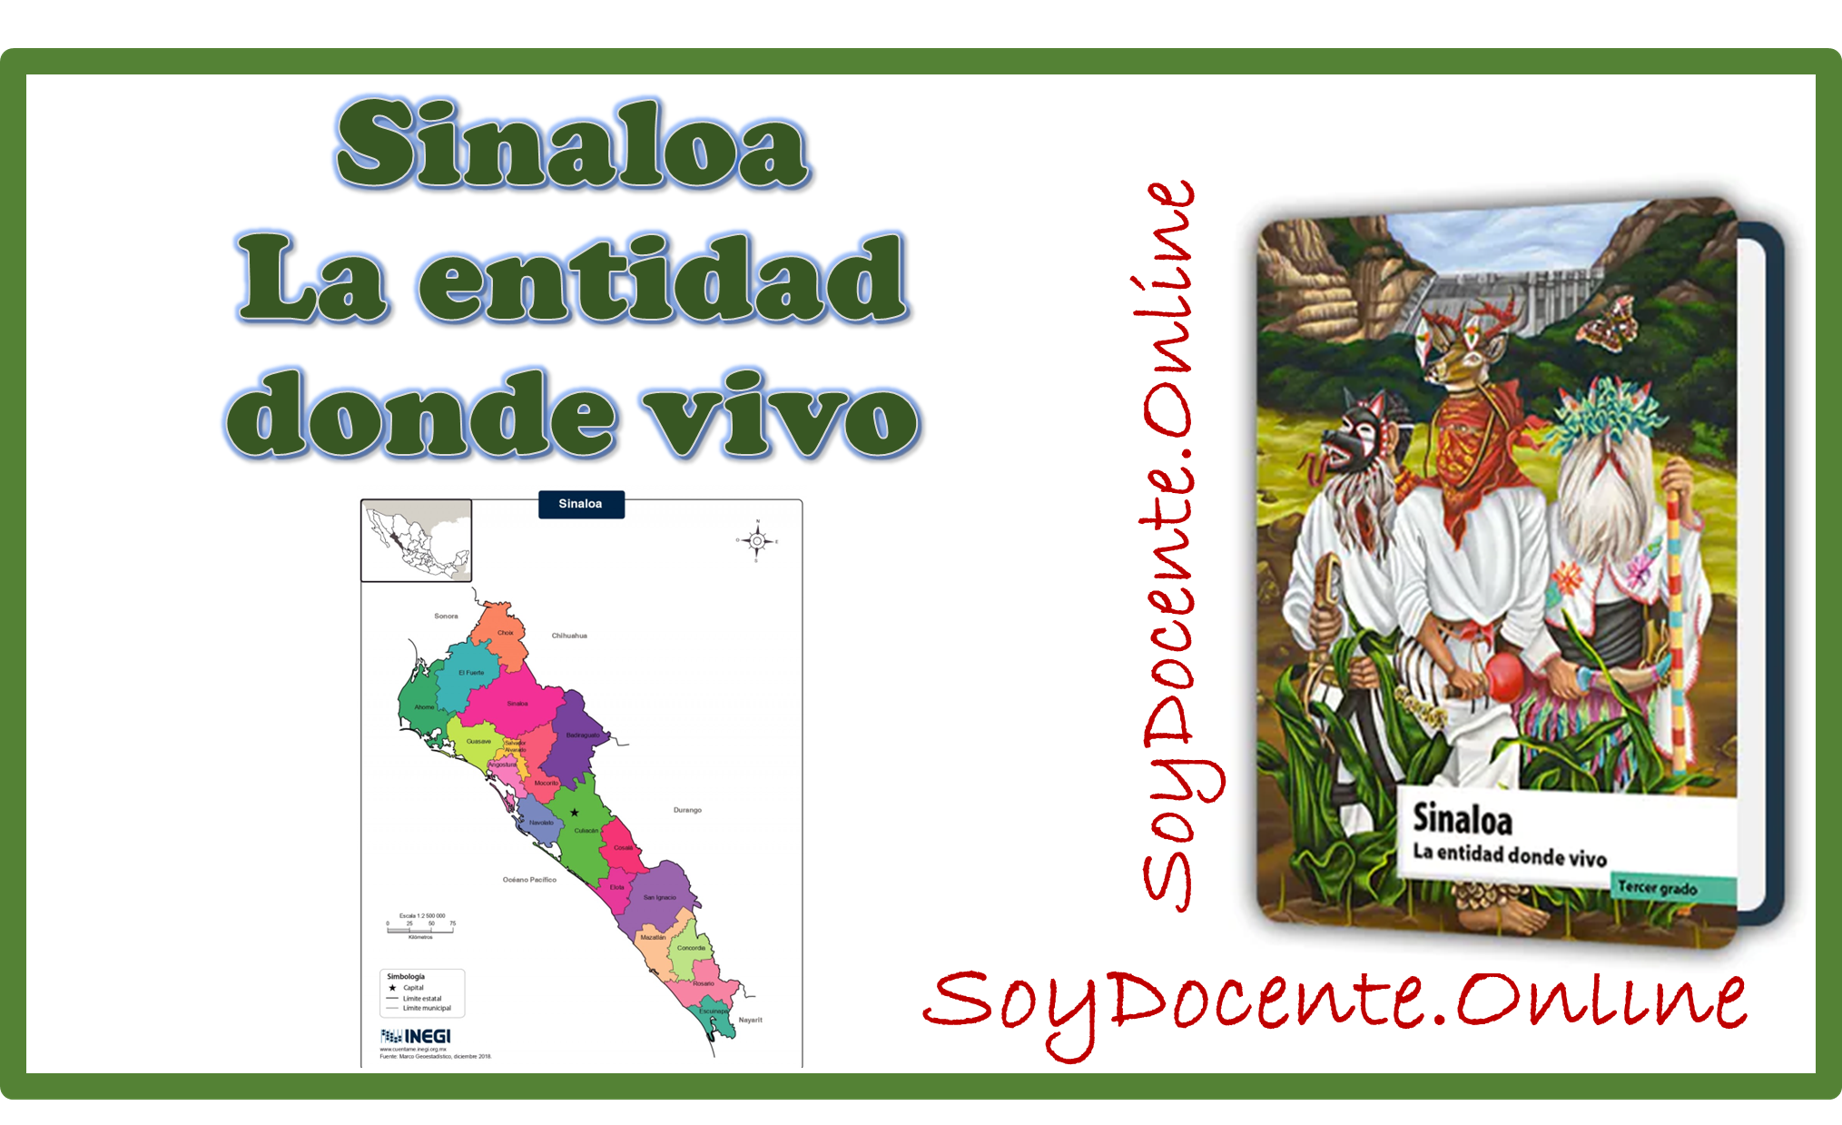 Ya puedes descargar el Libro de Sinaloa La entidad donde vivo tercer grado de Primaria, planificado por la SEP, distribuido por la CONALITEG. Formato en PDF